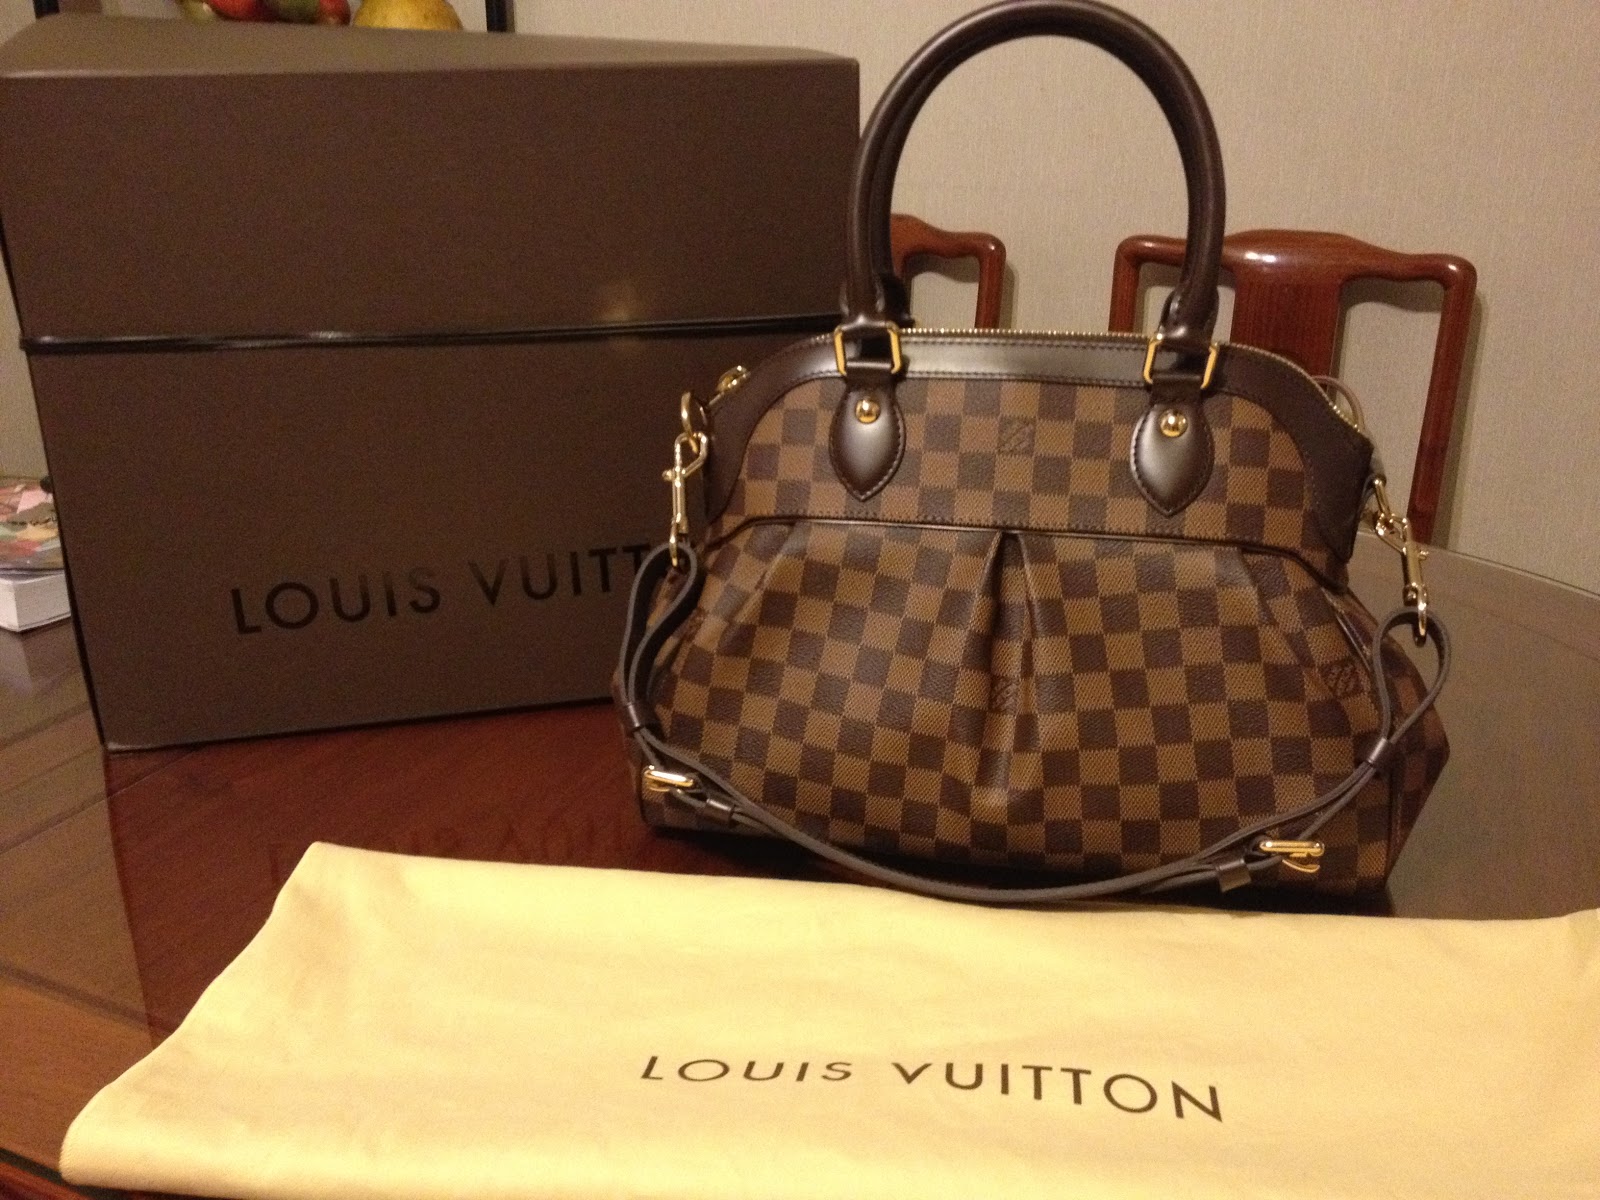 all things fashion, handbags, nrd.kbic-nsn.gov me : Louis Vuitton Trevi PM; my review on this ...